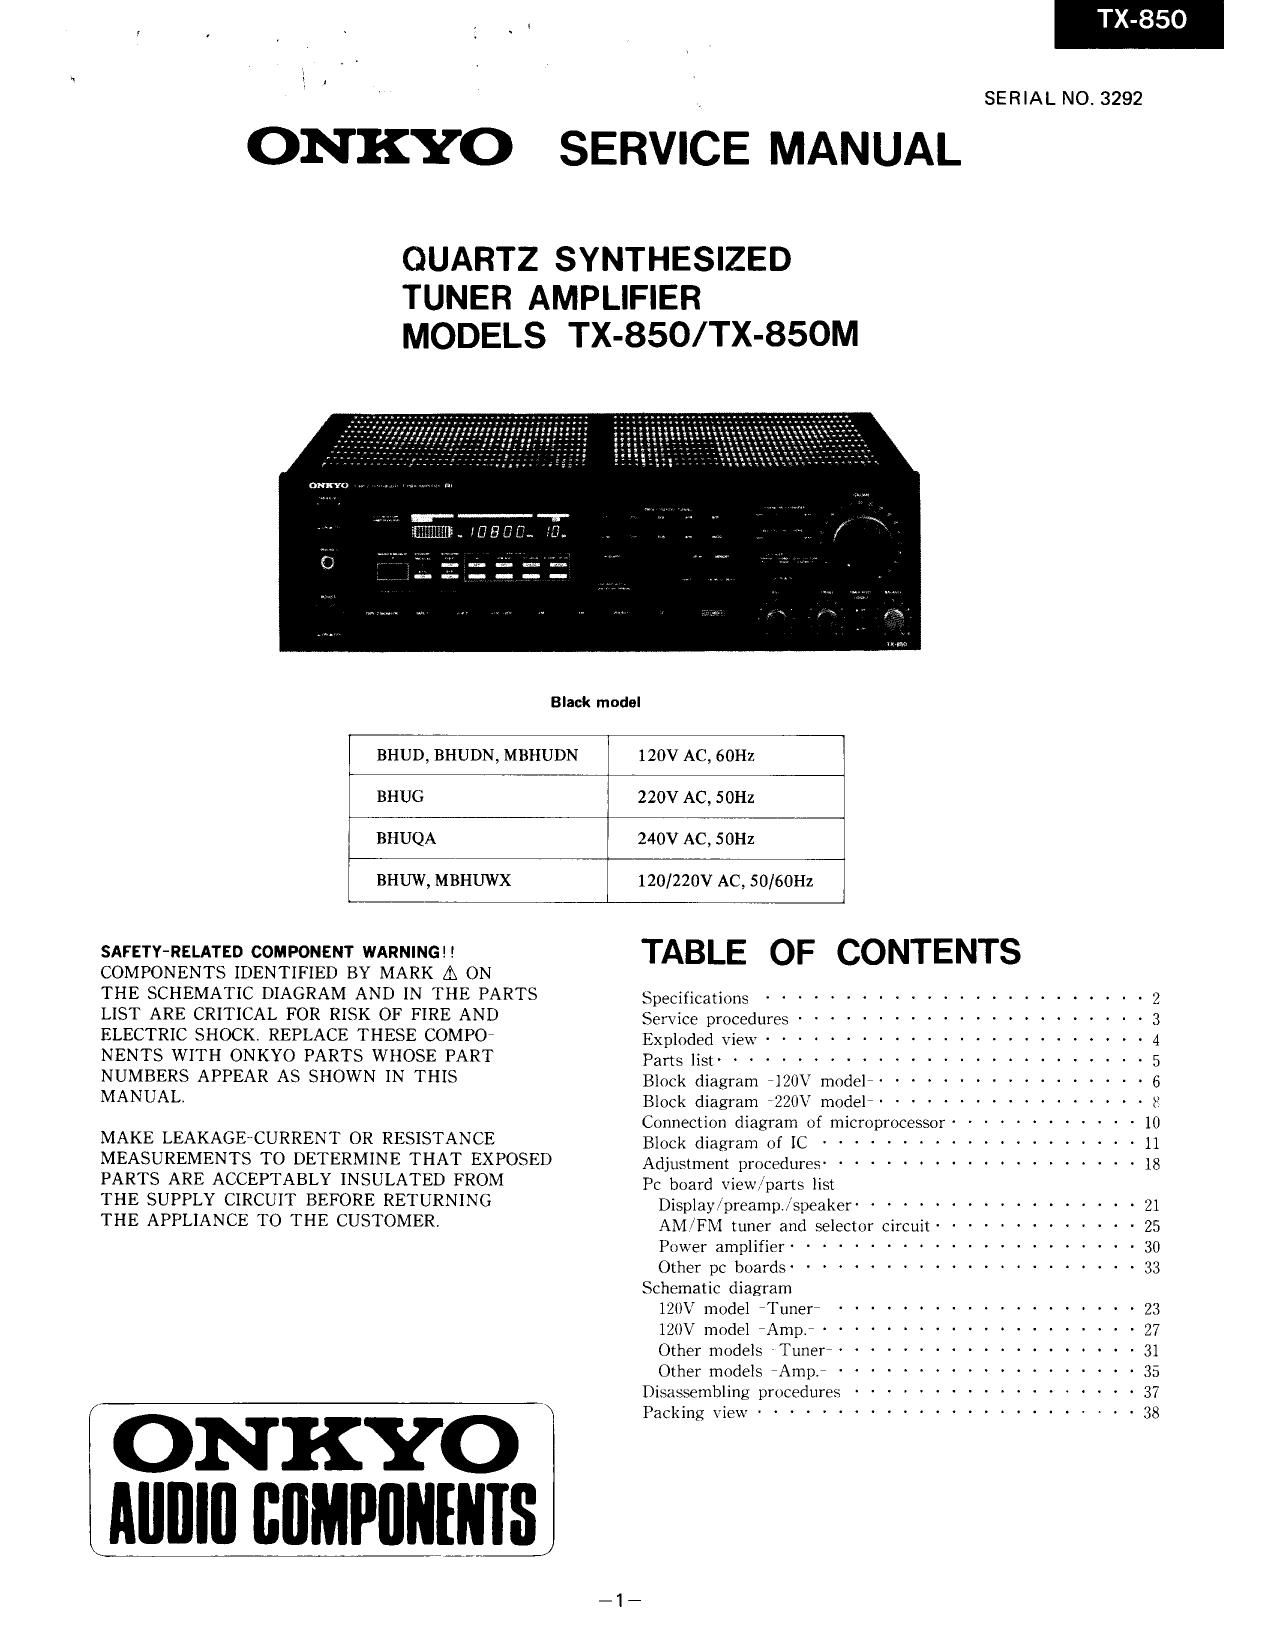 Onkyo TX 850 Service Manual